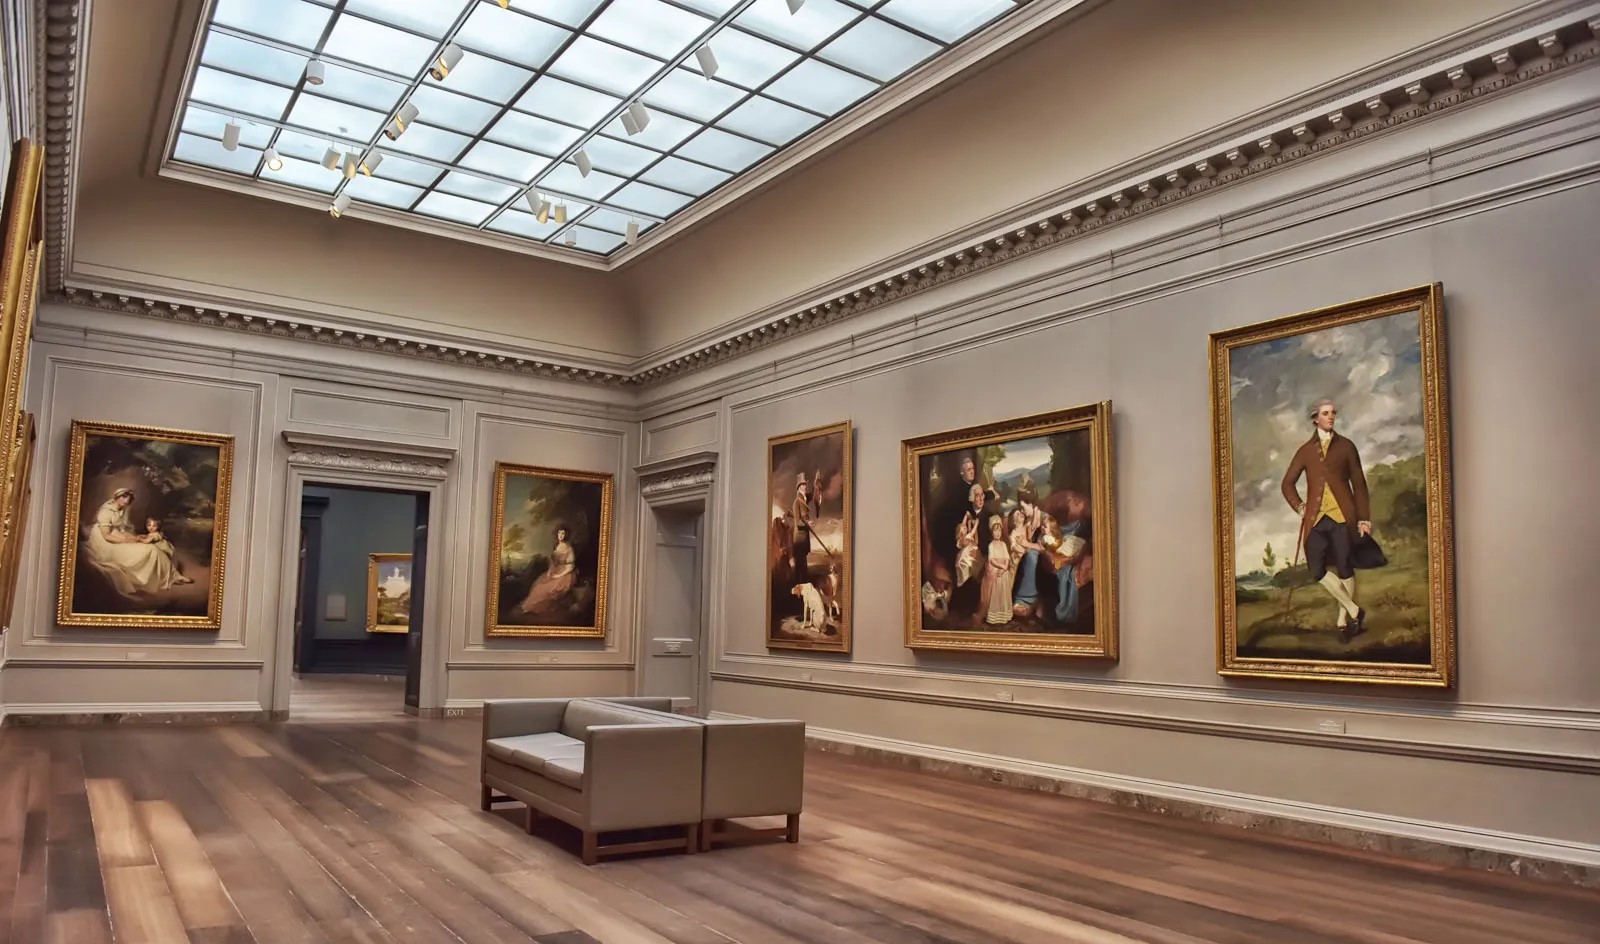 这是一间艺术画廊内部，墙上挂着不同风格的绘画作品，房间装饰典雅，有长椅和木质地板，顶部是透明天窗。